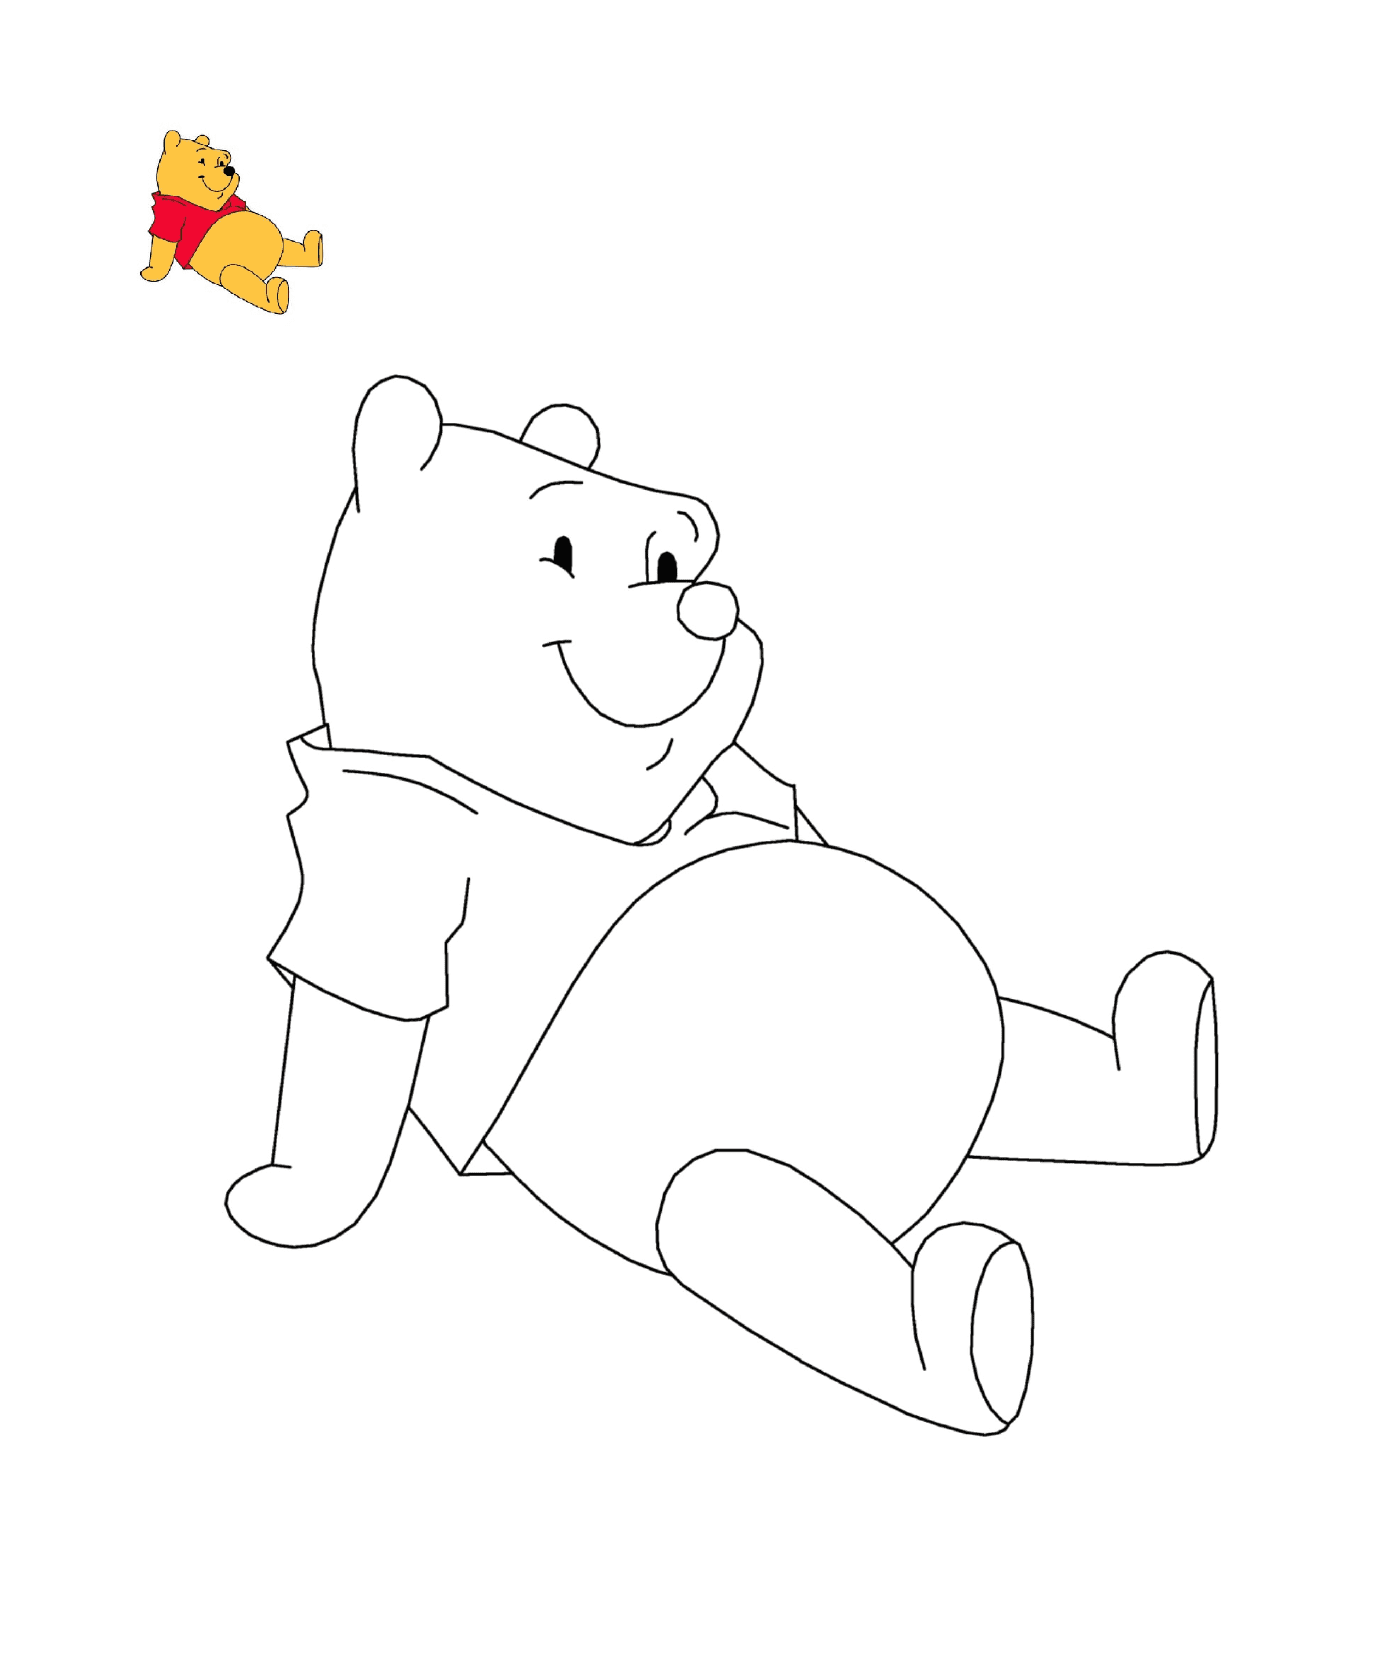  Winnie o urso está sentado no chão 